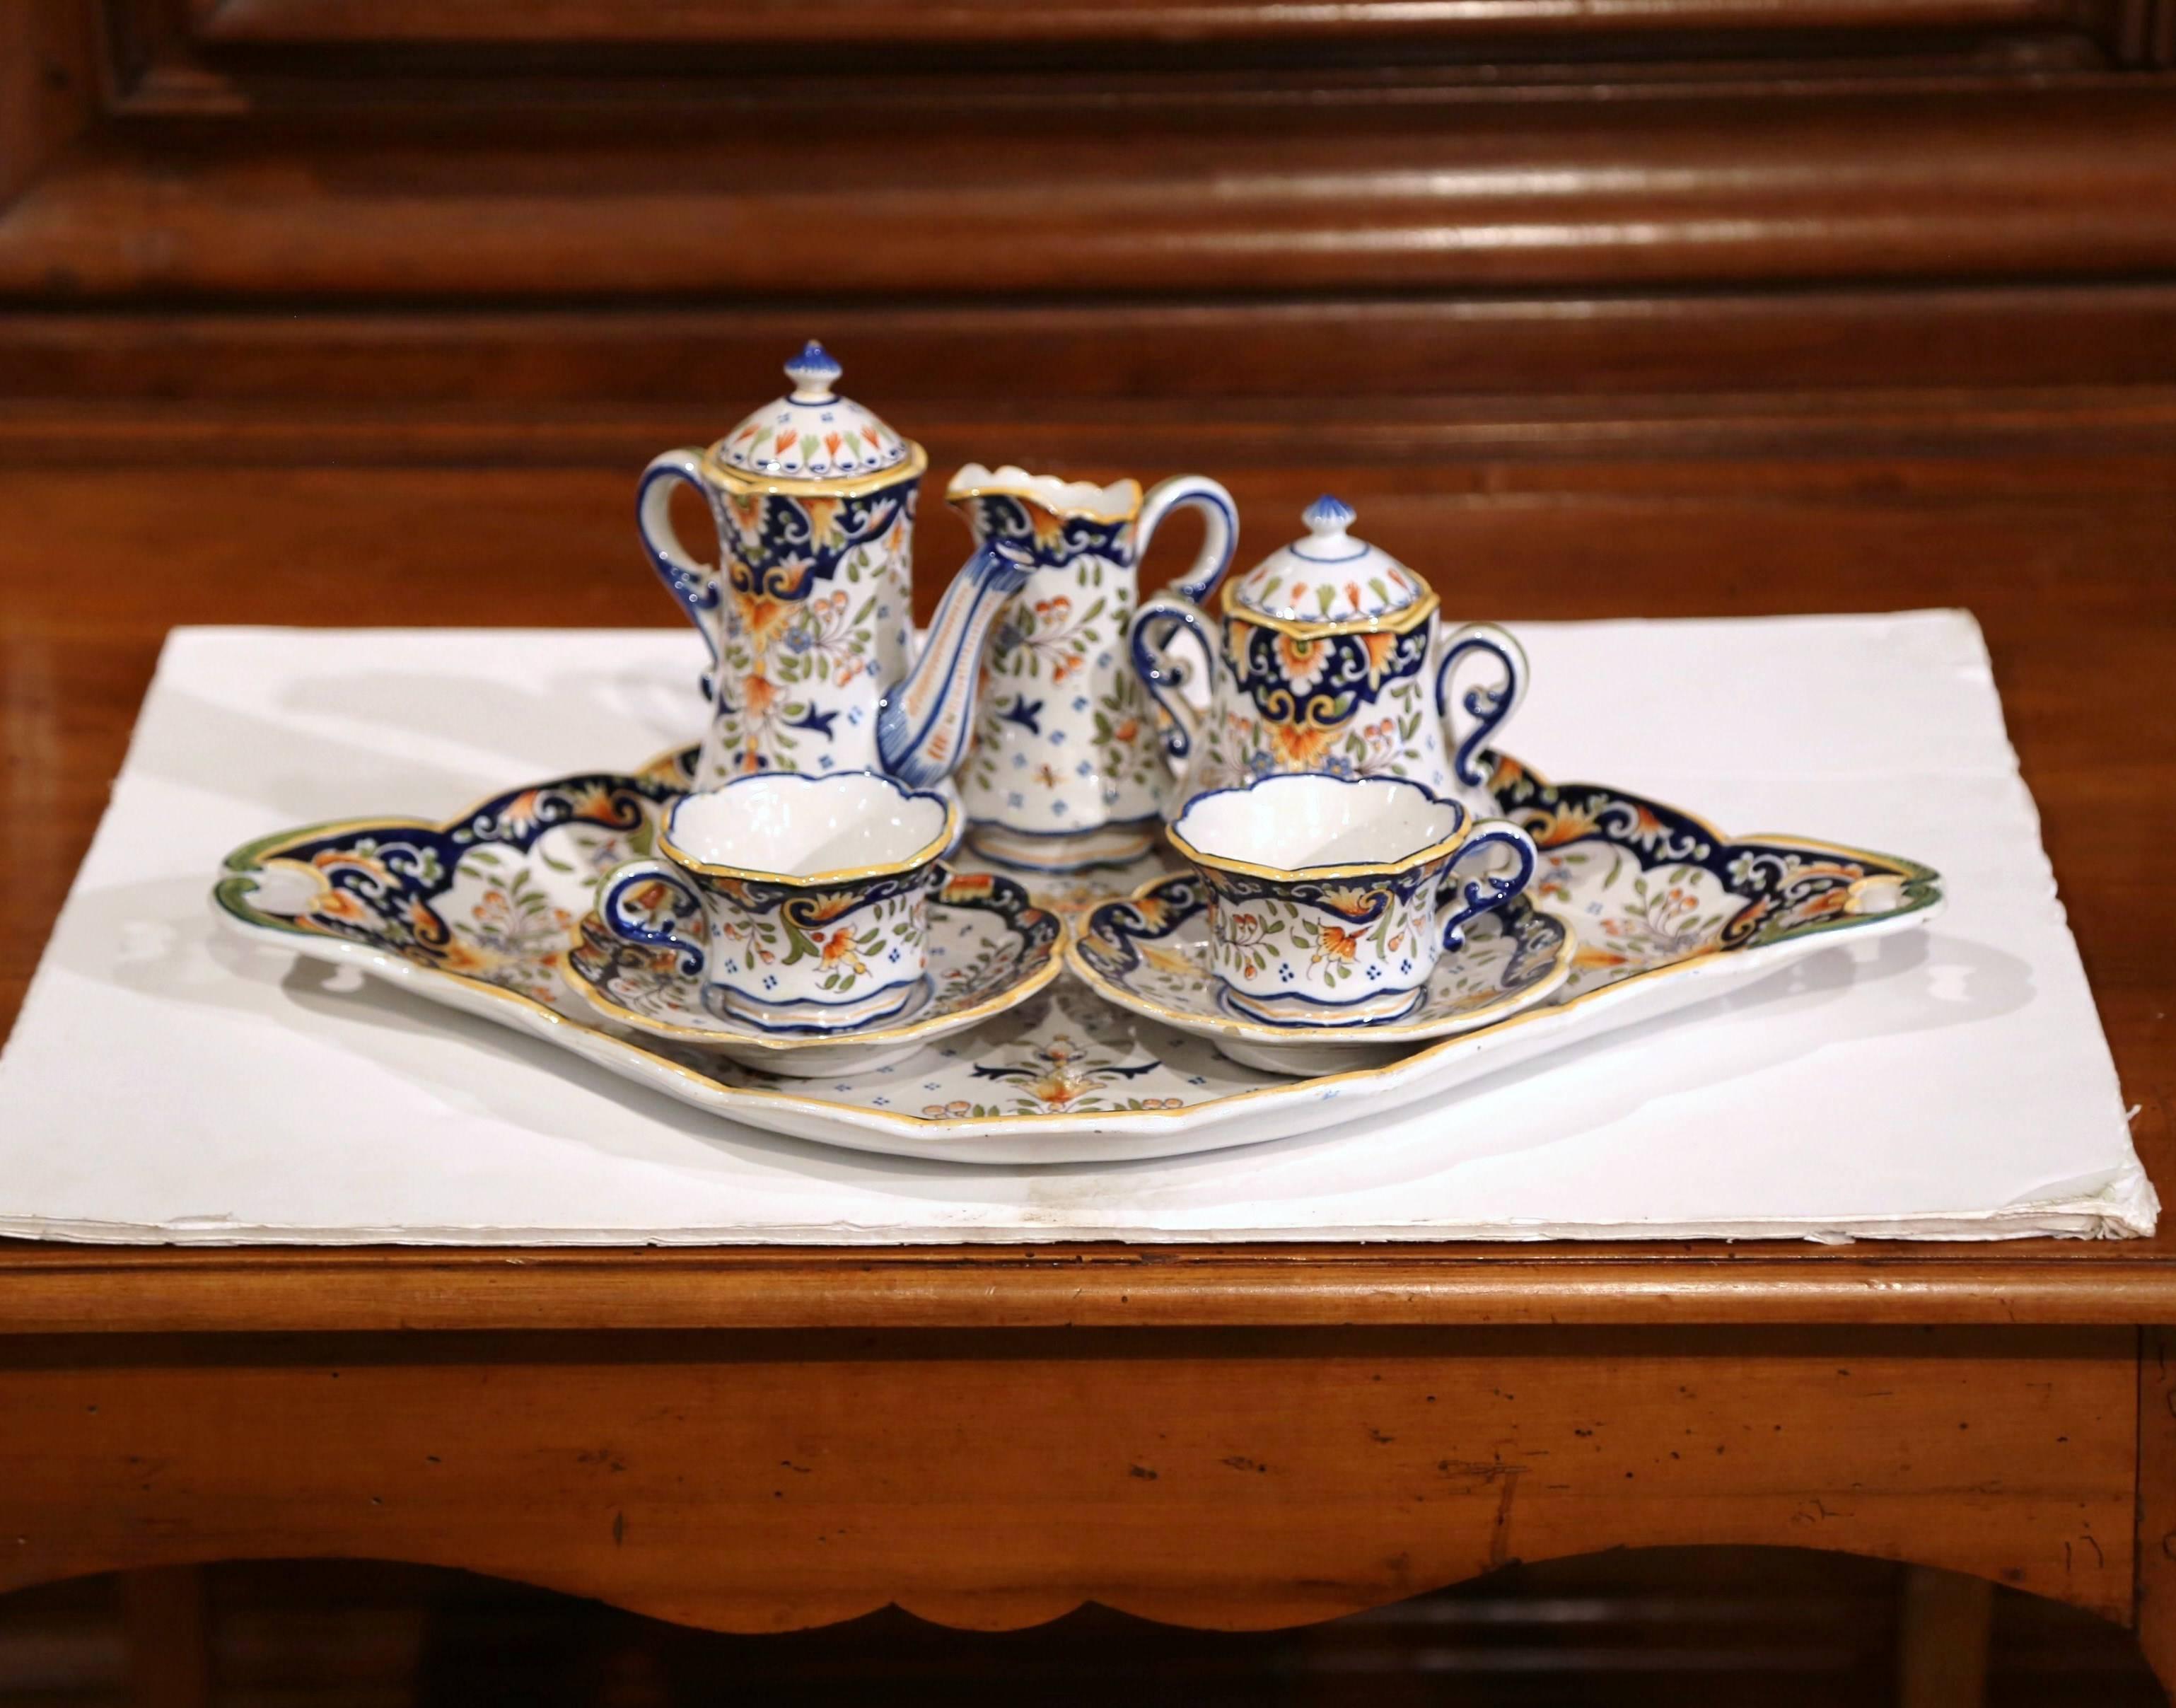 Servieren Sie Kaffee oder Tee in diesem eleganten Kaffeeservice aus Fayence. Das Set wurde um 1920 in Blois, Frankreich, hergestellt und besteht aus einem großen ovalen Tablett, zwei Tassen mit Untertassen, einem Sahnekännchen, einer Zuckerdose mit